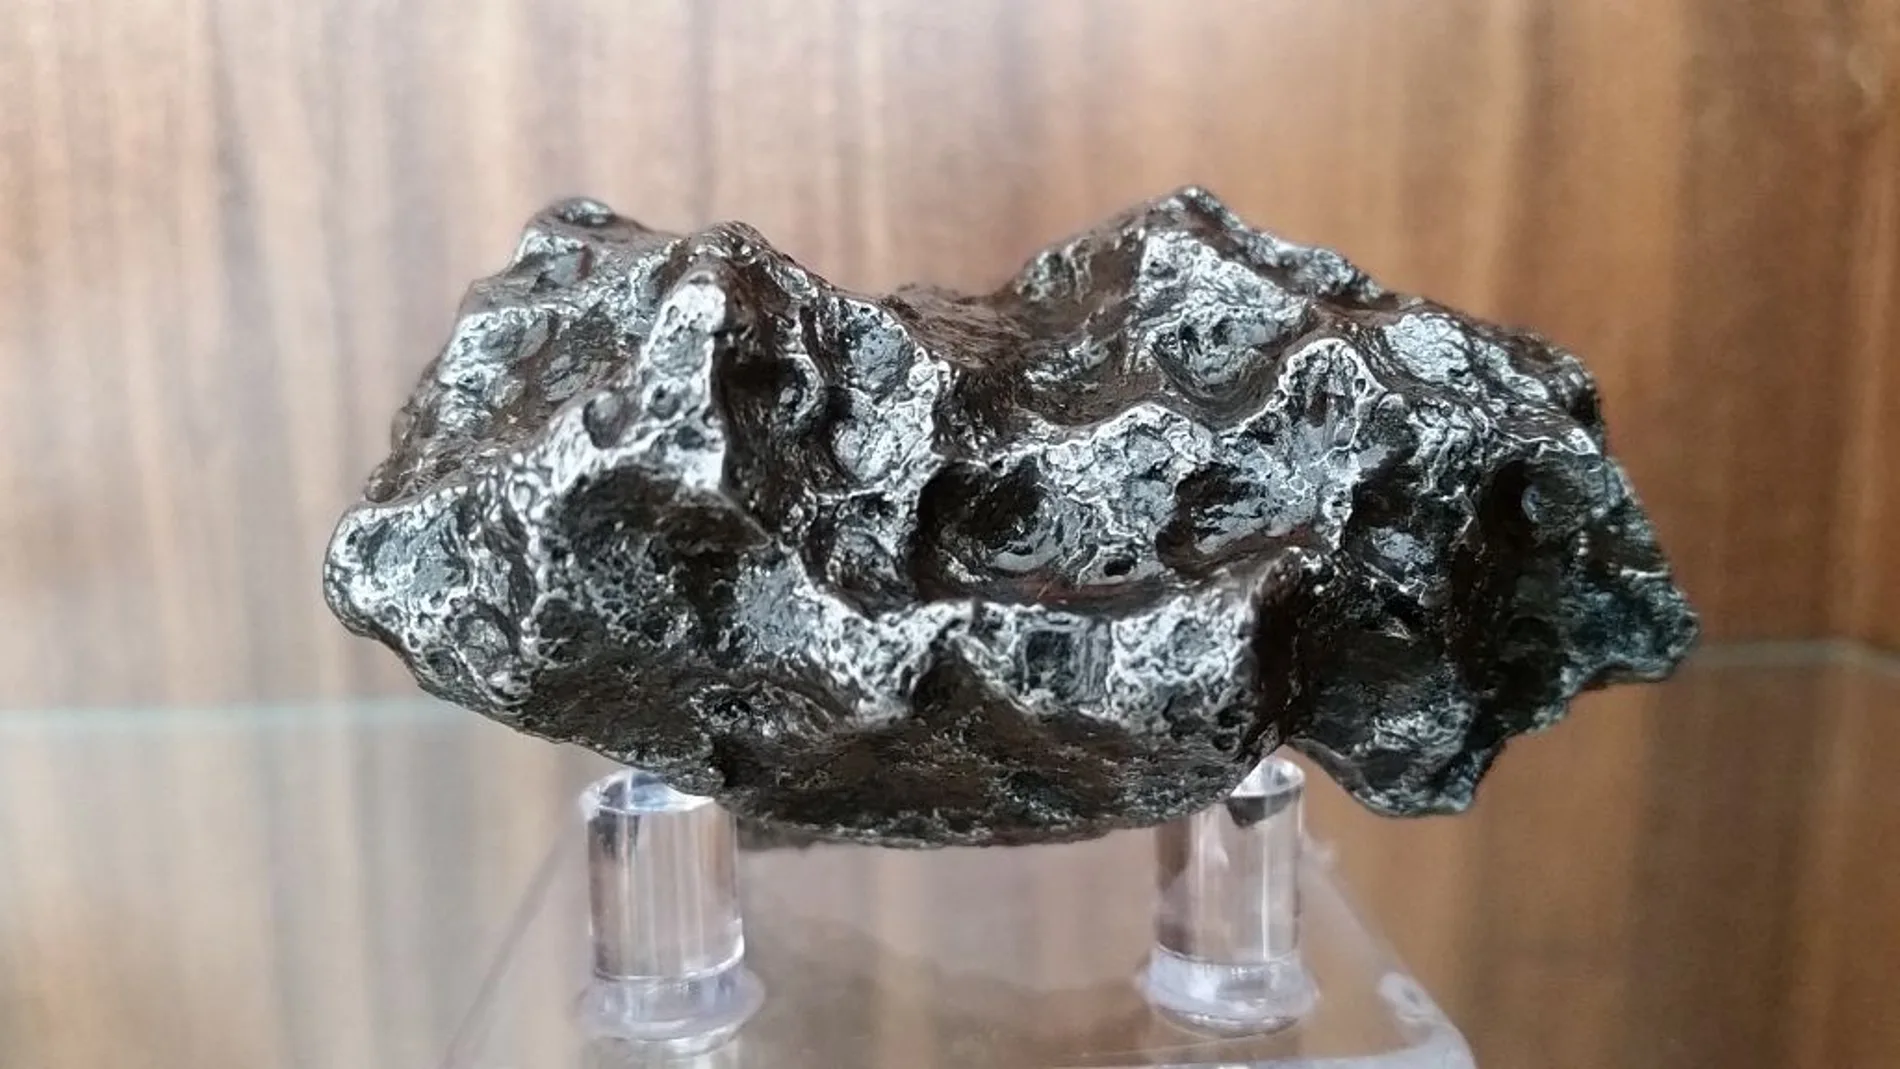 Fragmento del meteorito metálico Campo del Cielo, caído en Argentina hace entre 4000 y 5000 años.